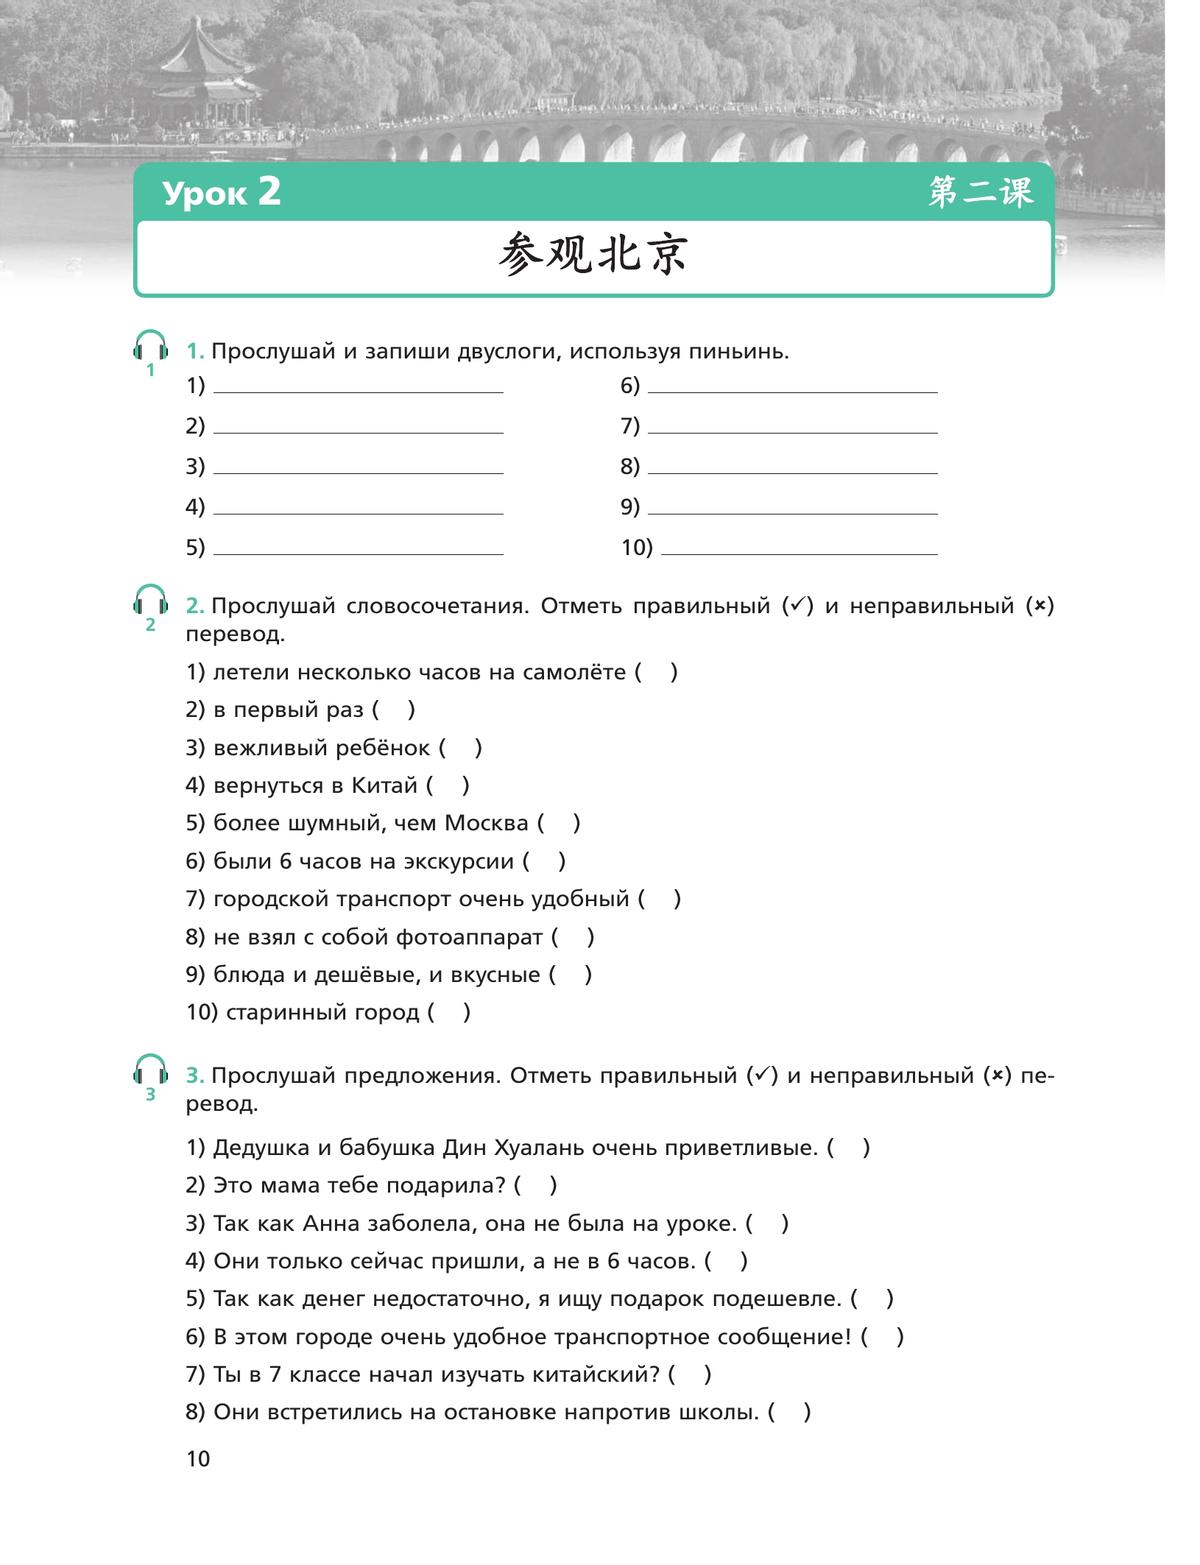 Китайский язык. Второй иностранный язык. Рабочая тетрадь. 8 класс 2